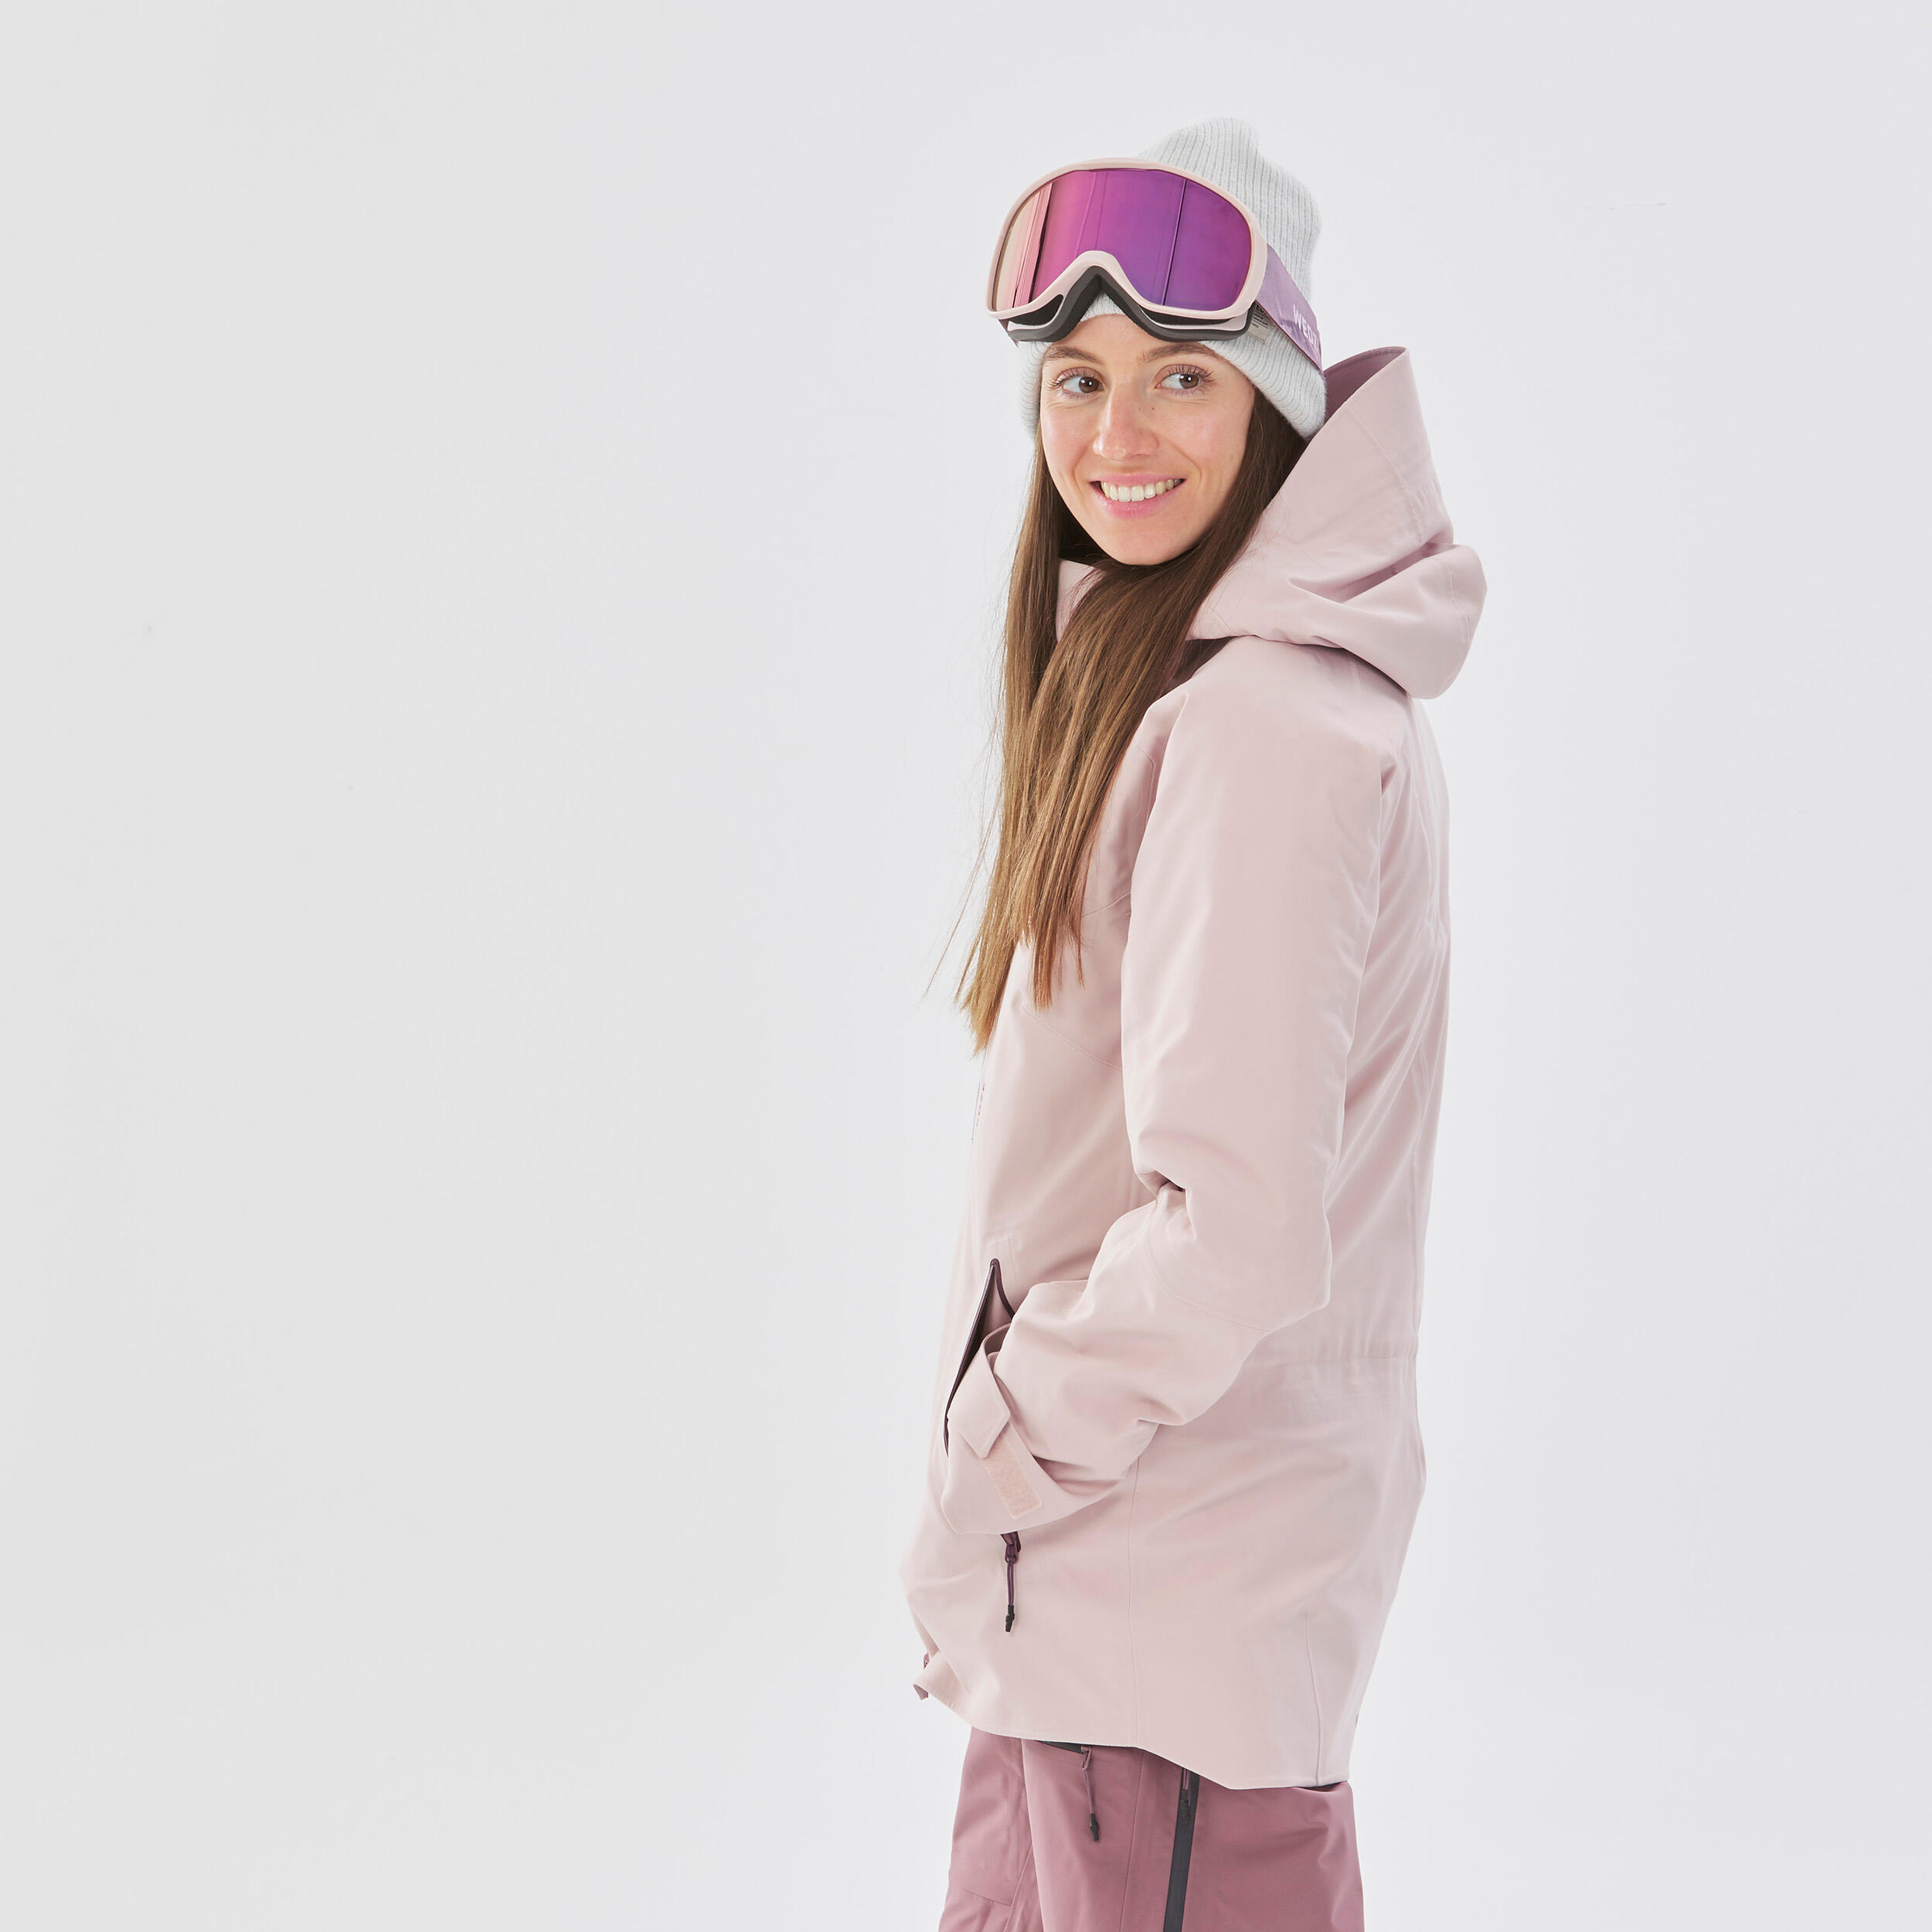 Manteau de ski femme – FR 500 - WEDZE